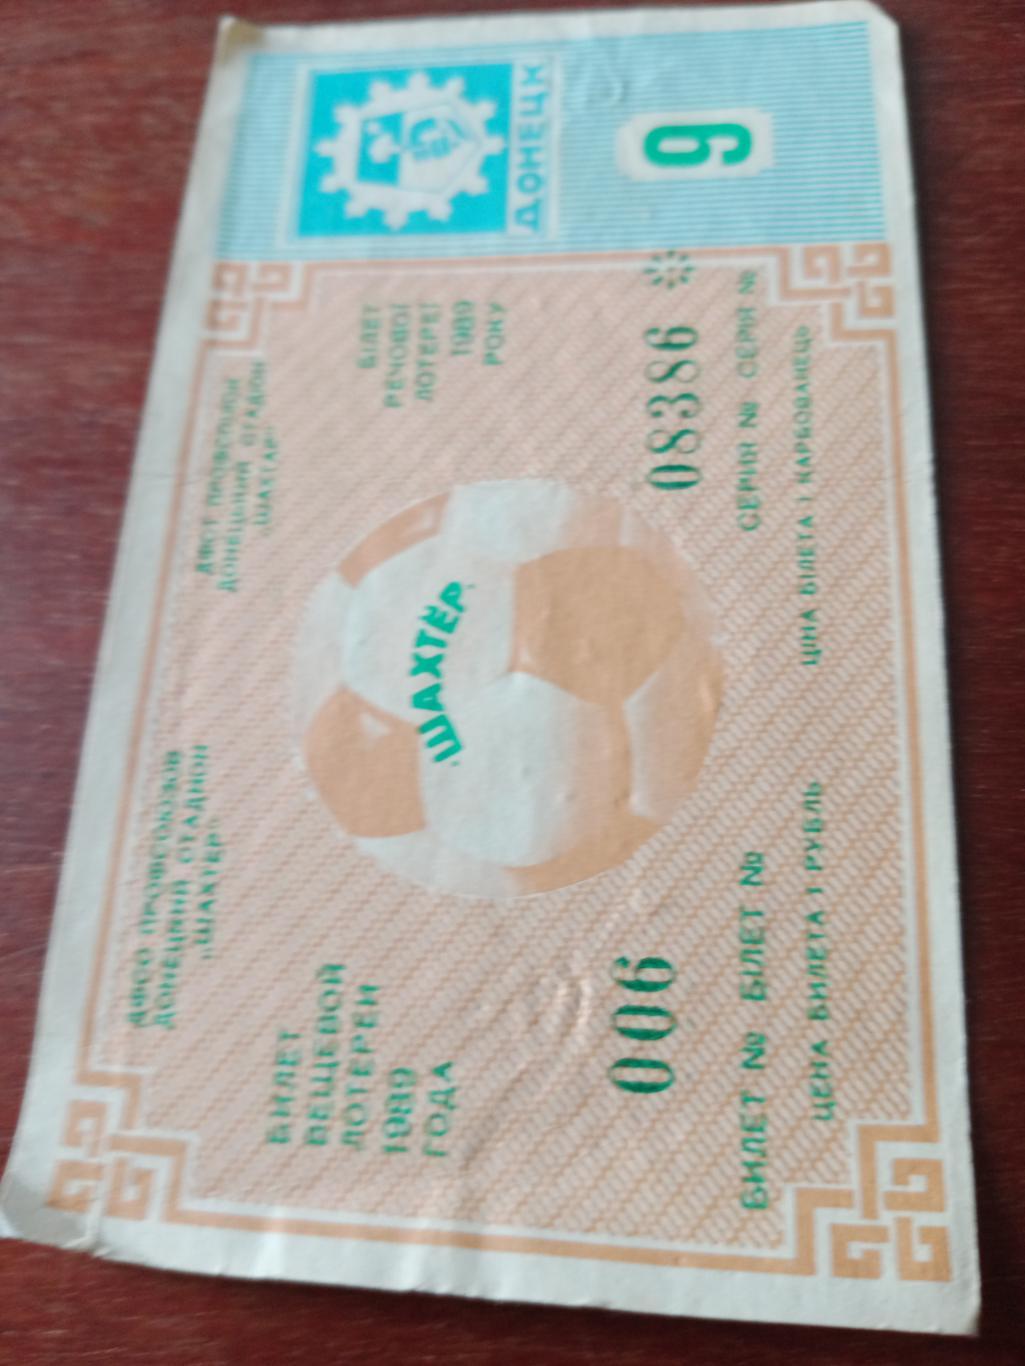 Билет вещевой лотереи на матче в Донецке. 1989 год